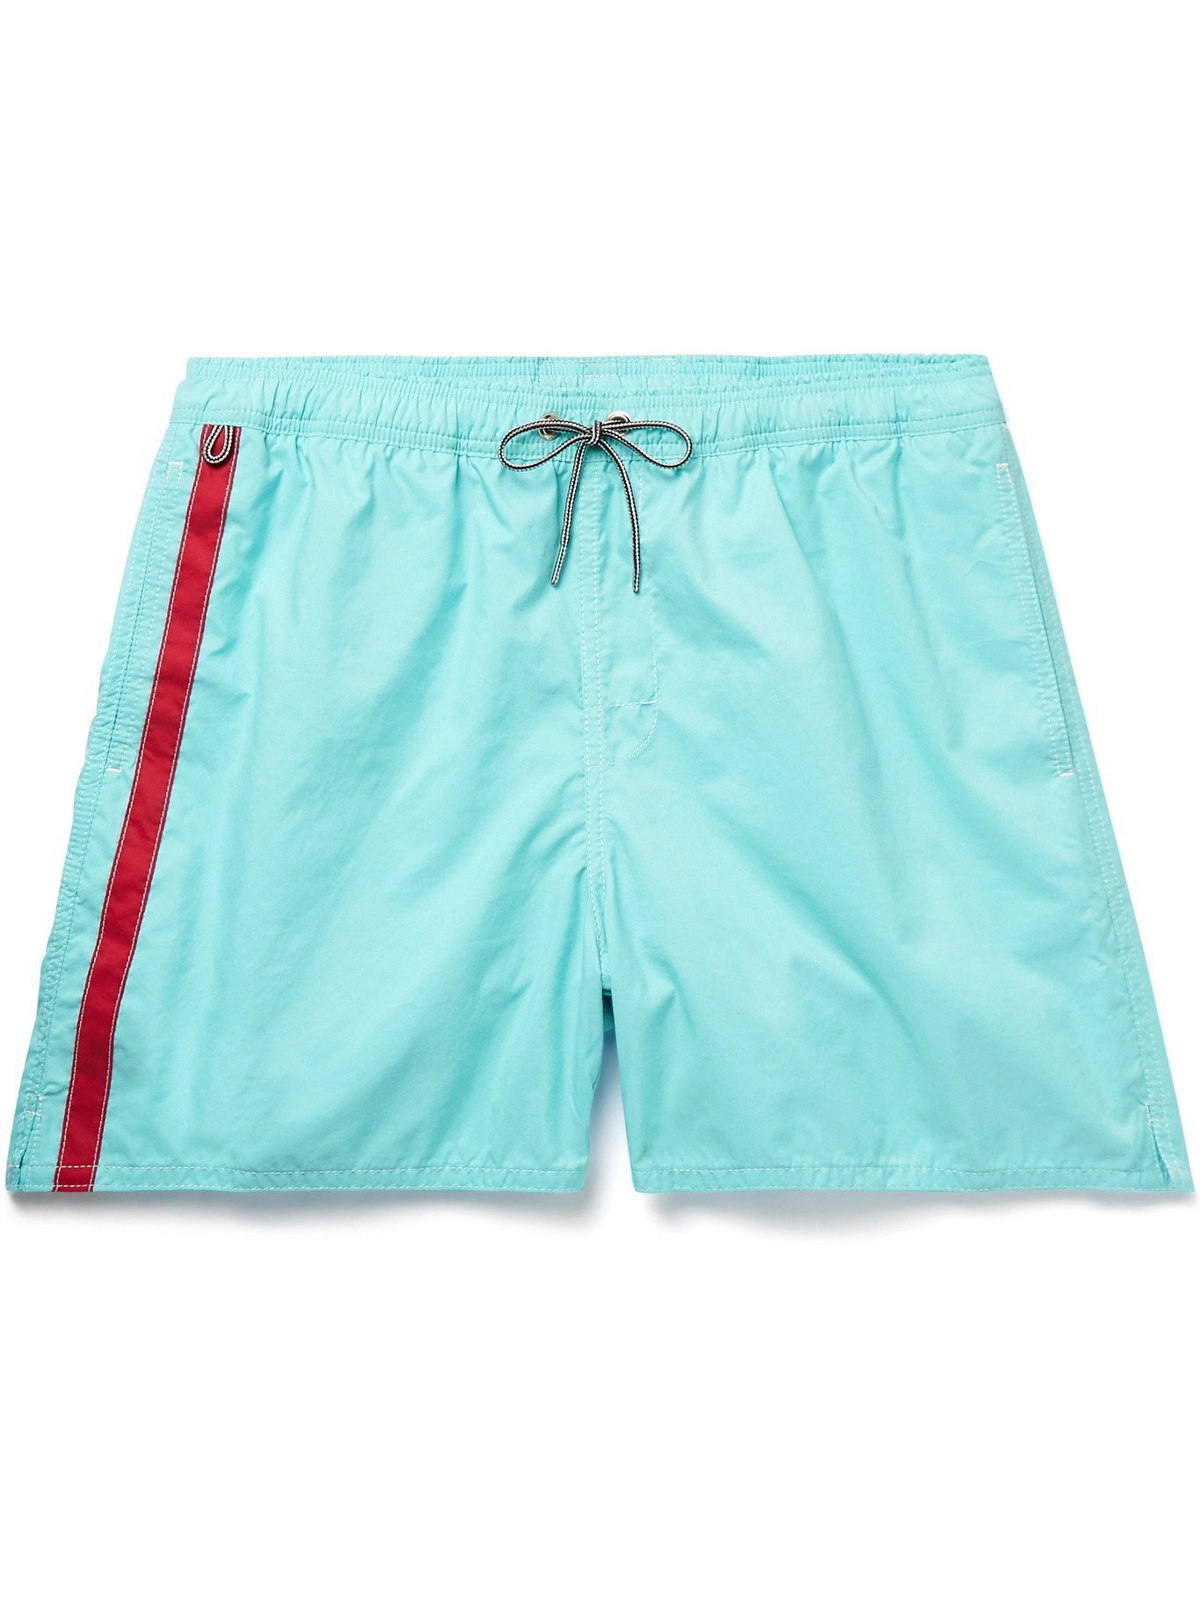 BIRDWELL - Mid-Length Striped Swim Shorts - Blue Birdwell